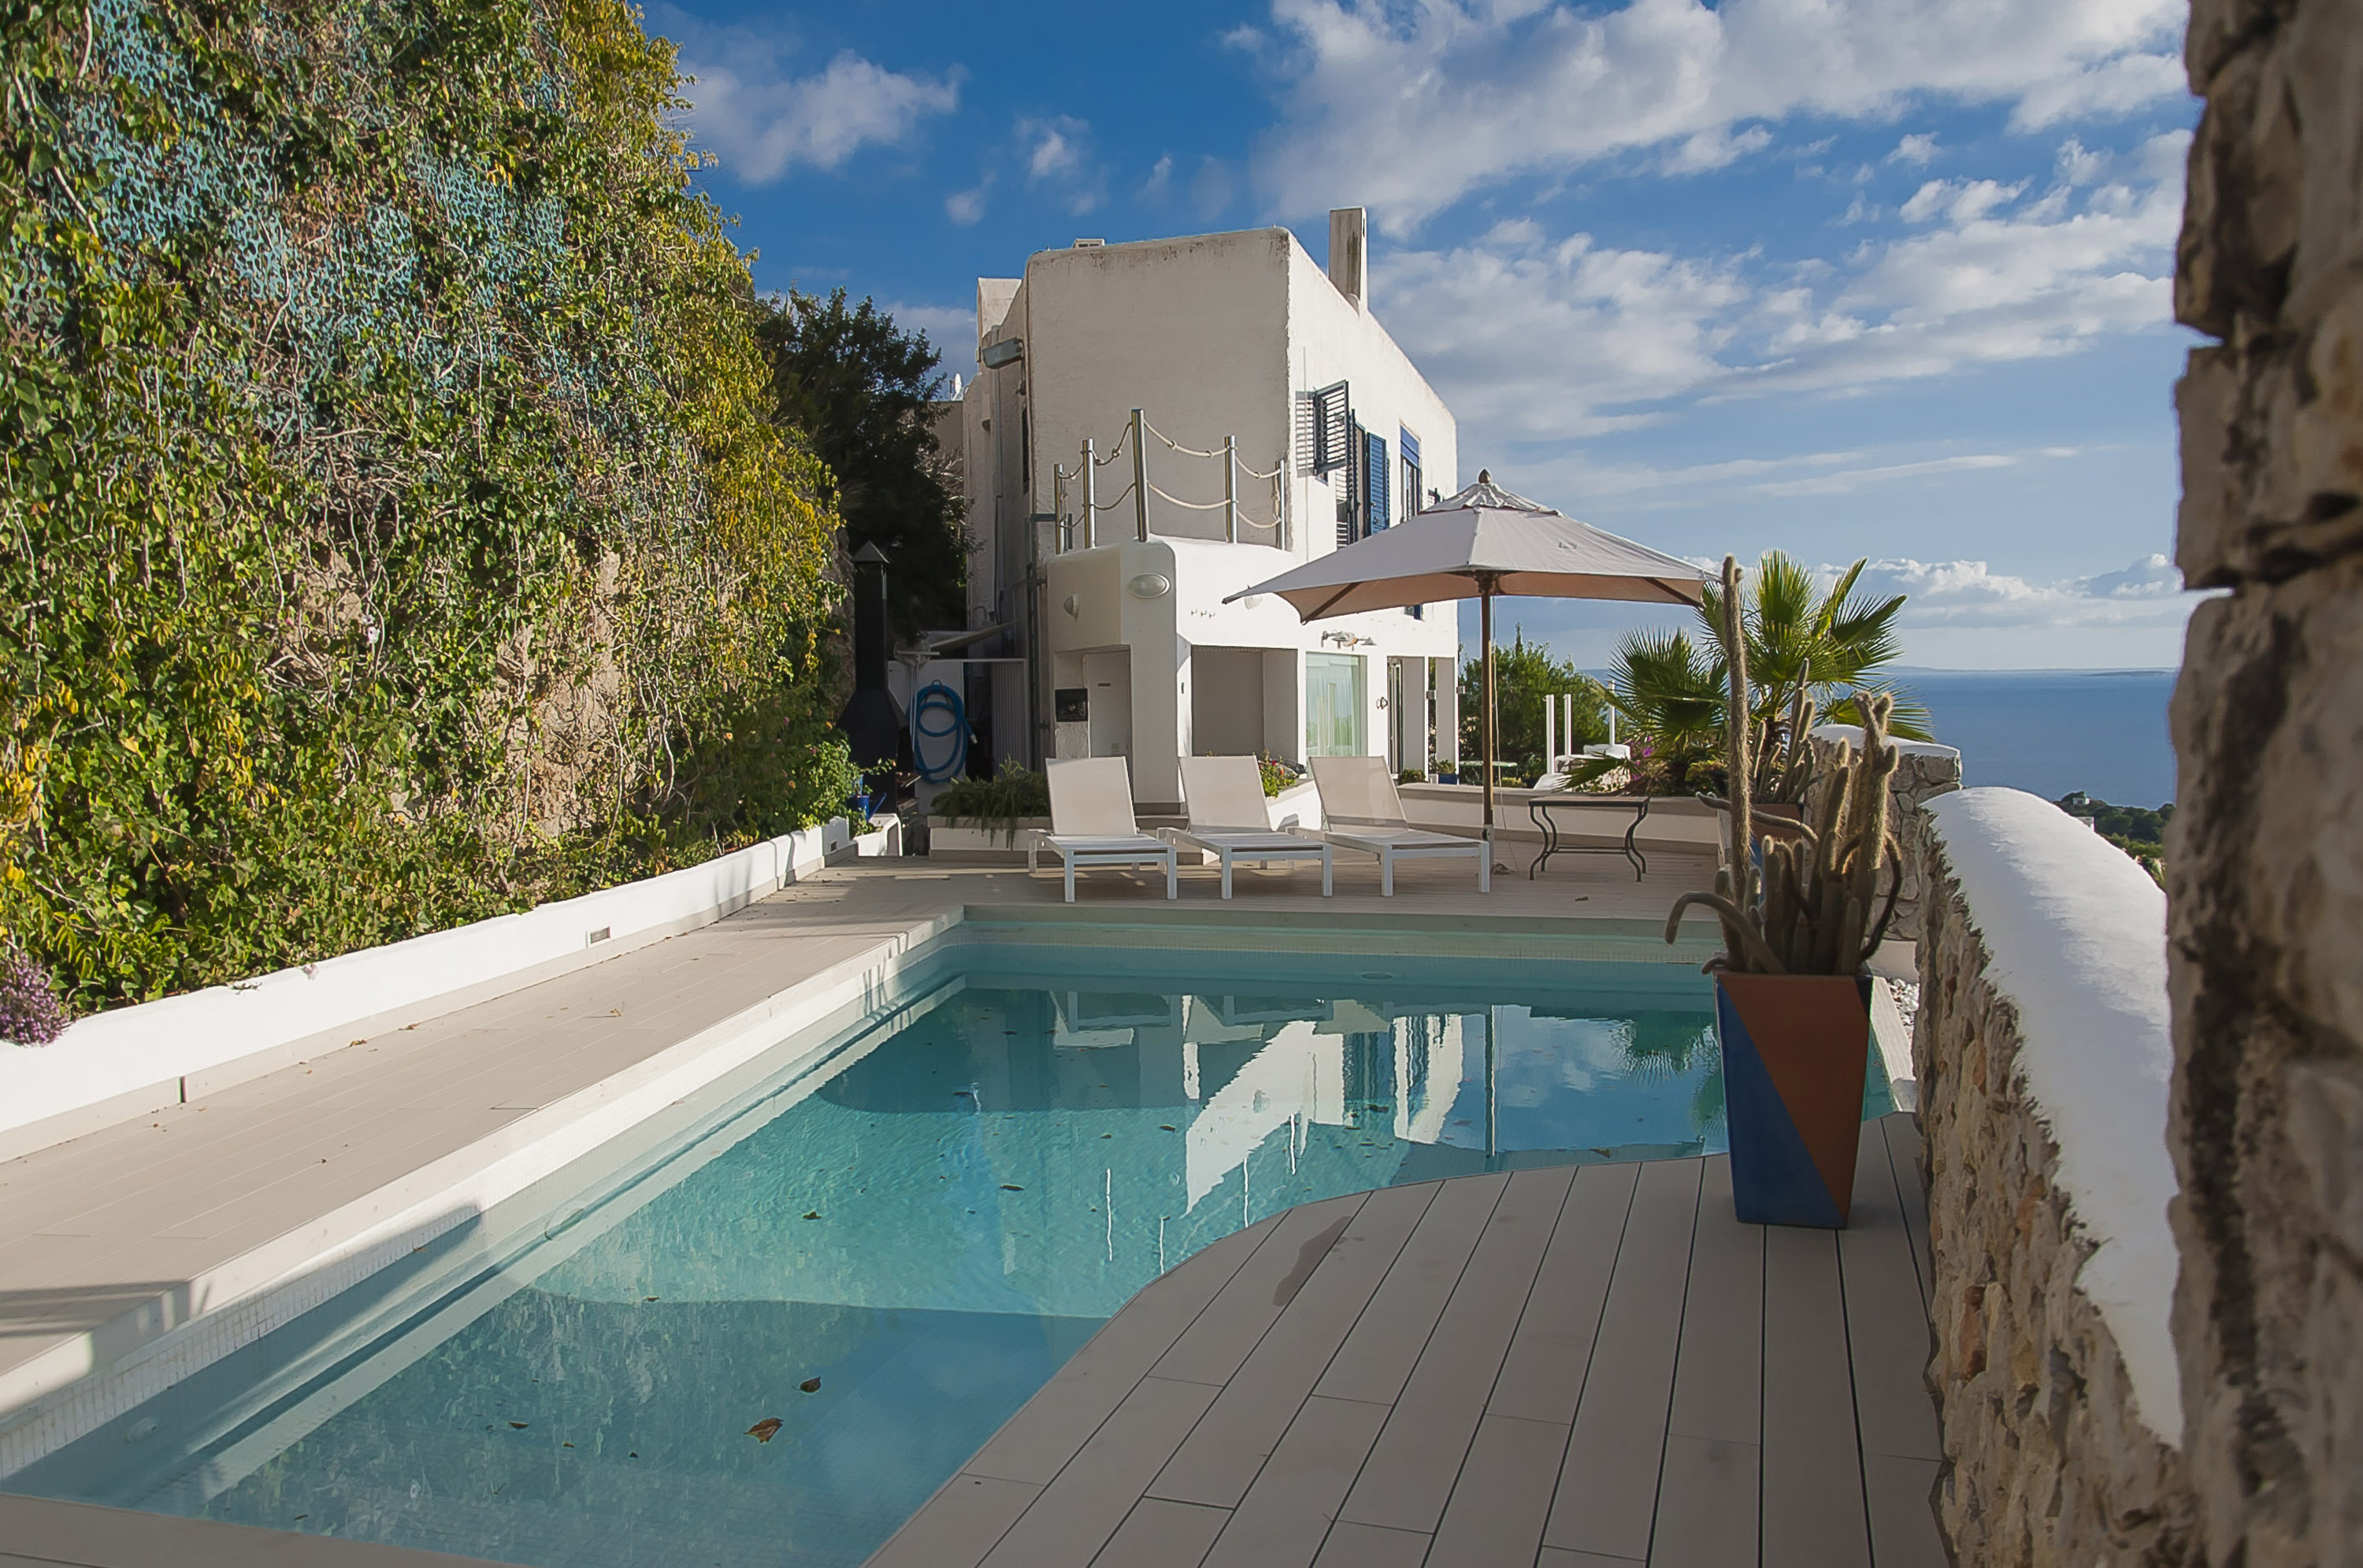 Mediterrane Villa in bester Lage von Ibiza with best views